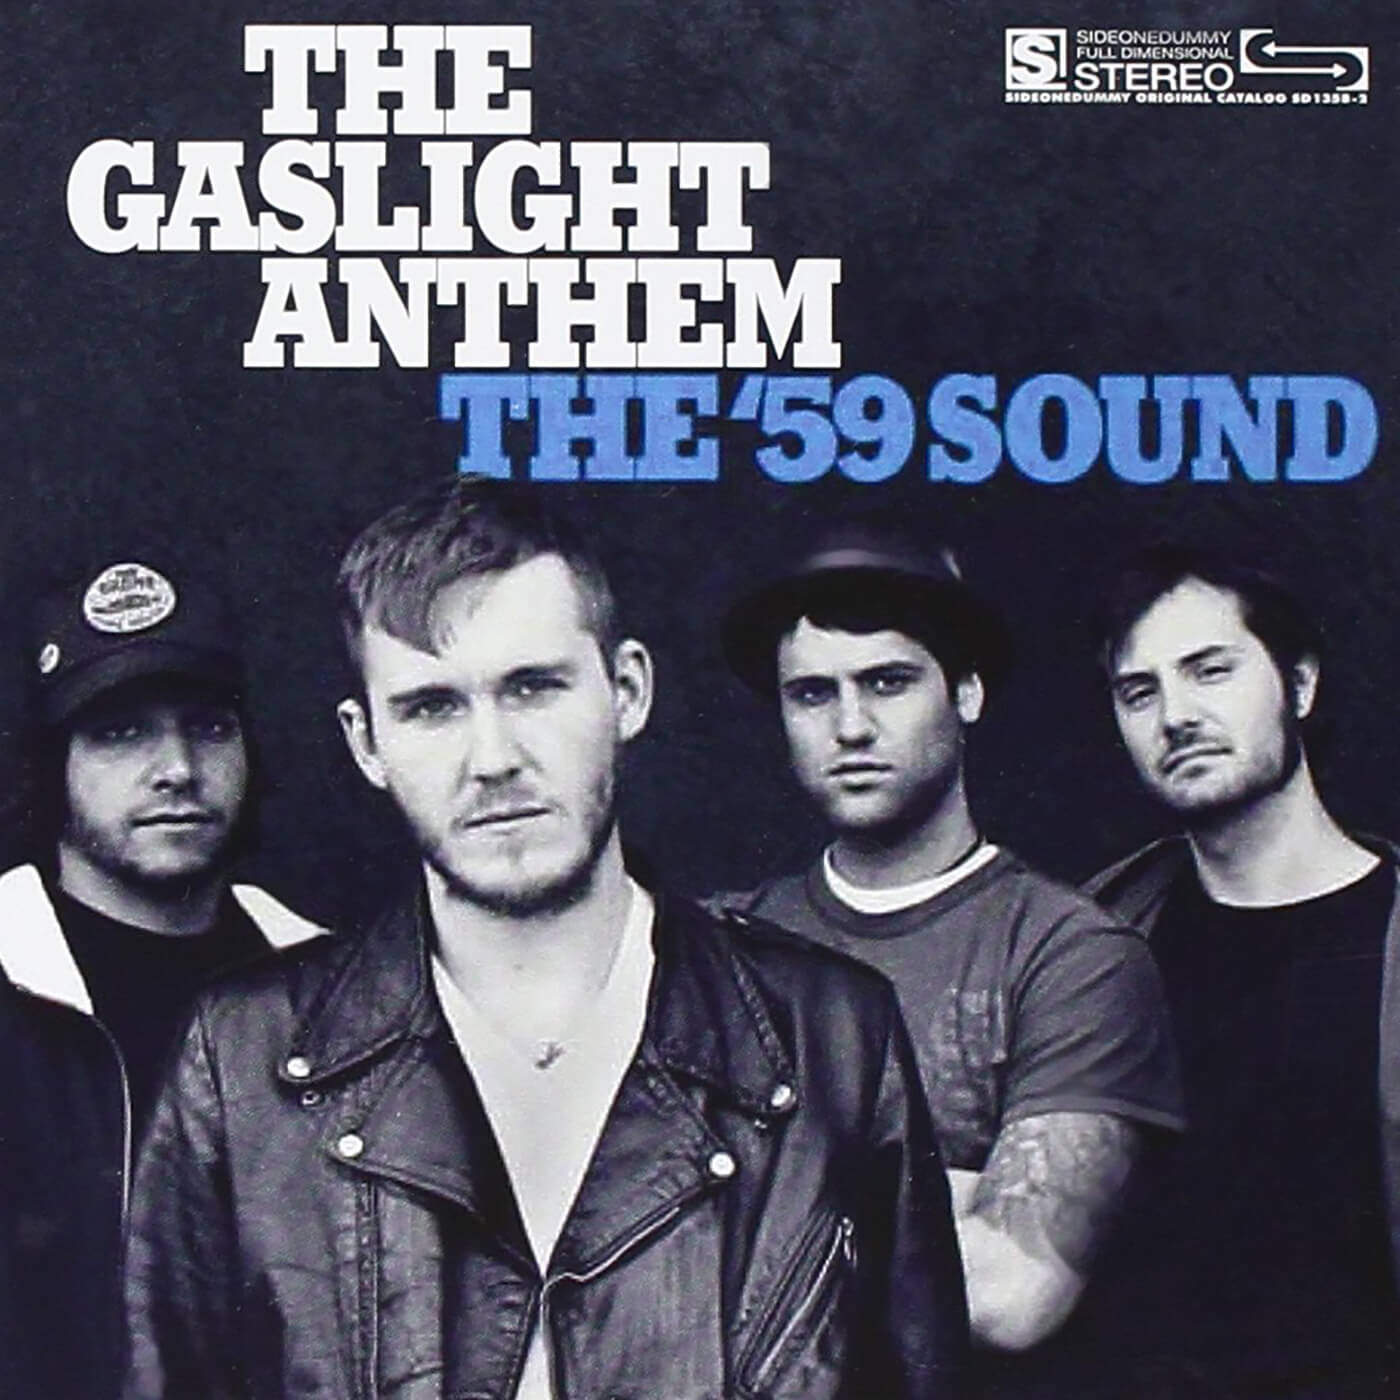 The '59 Sound by The Gaslight Anthem